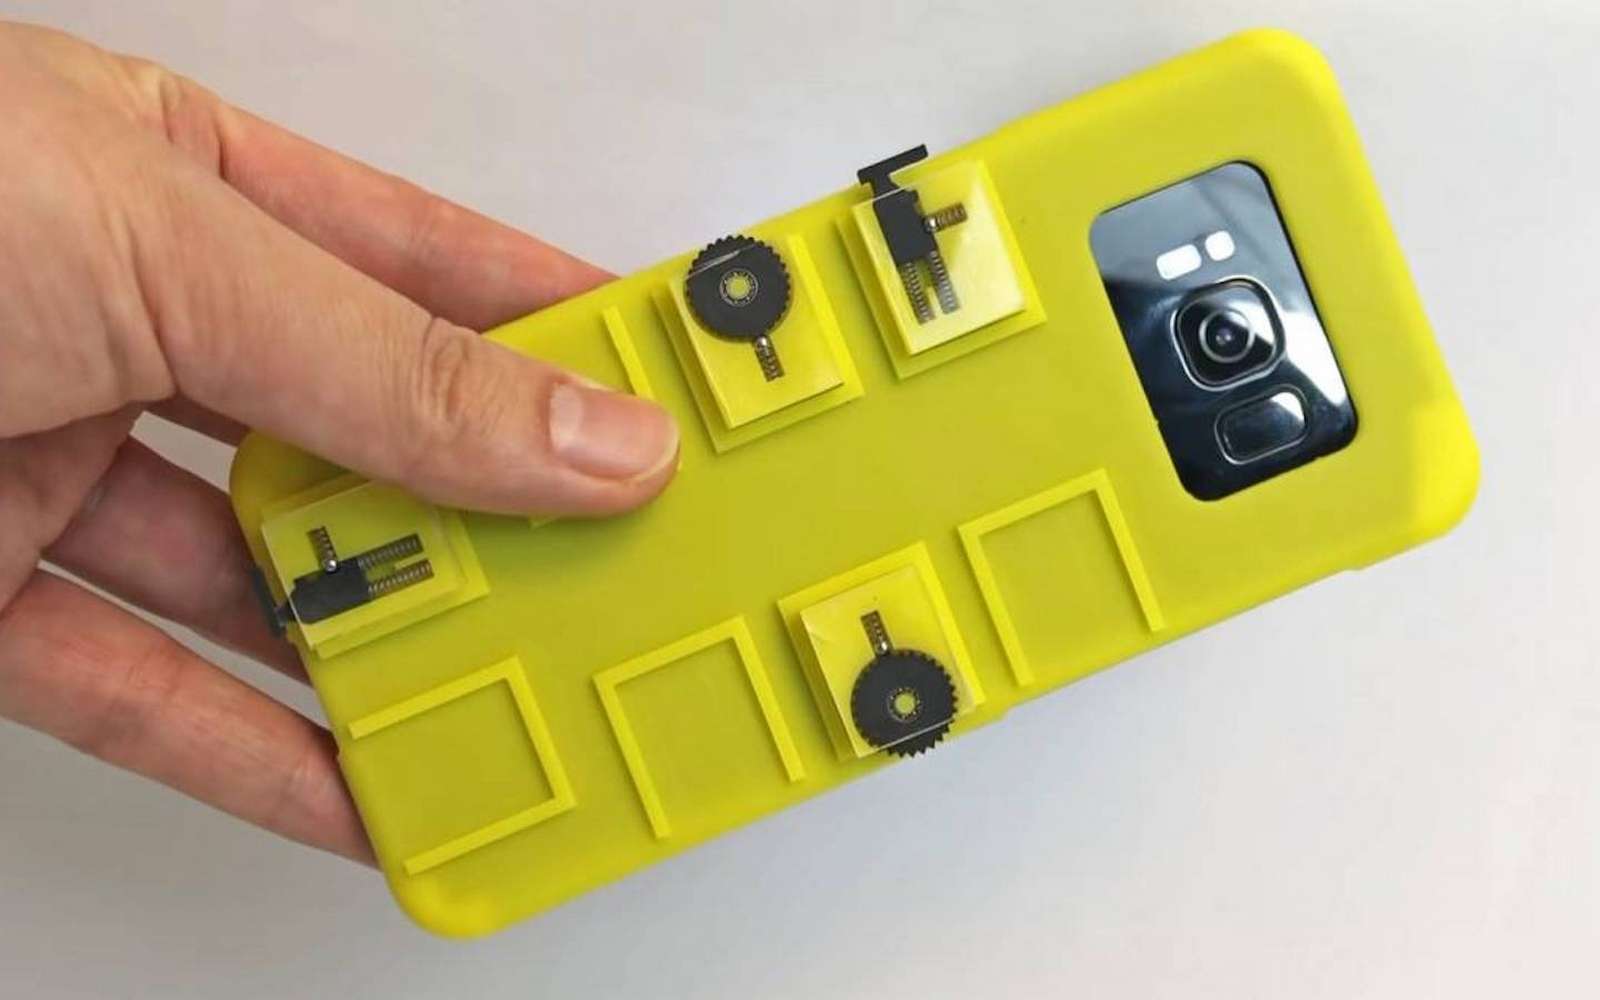 Smartphone : cette coque ingénieuse ajoute des boutons et une molette